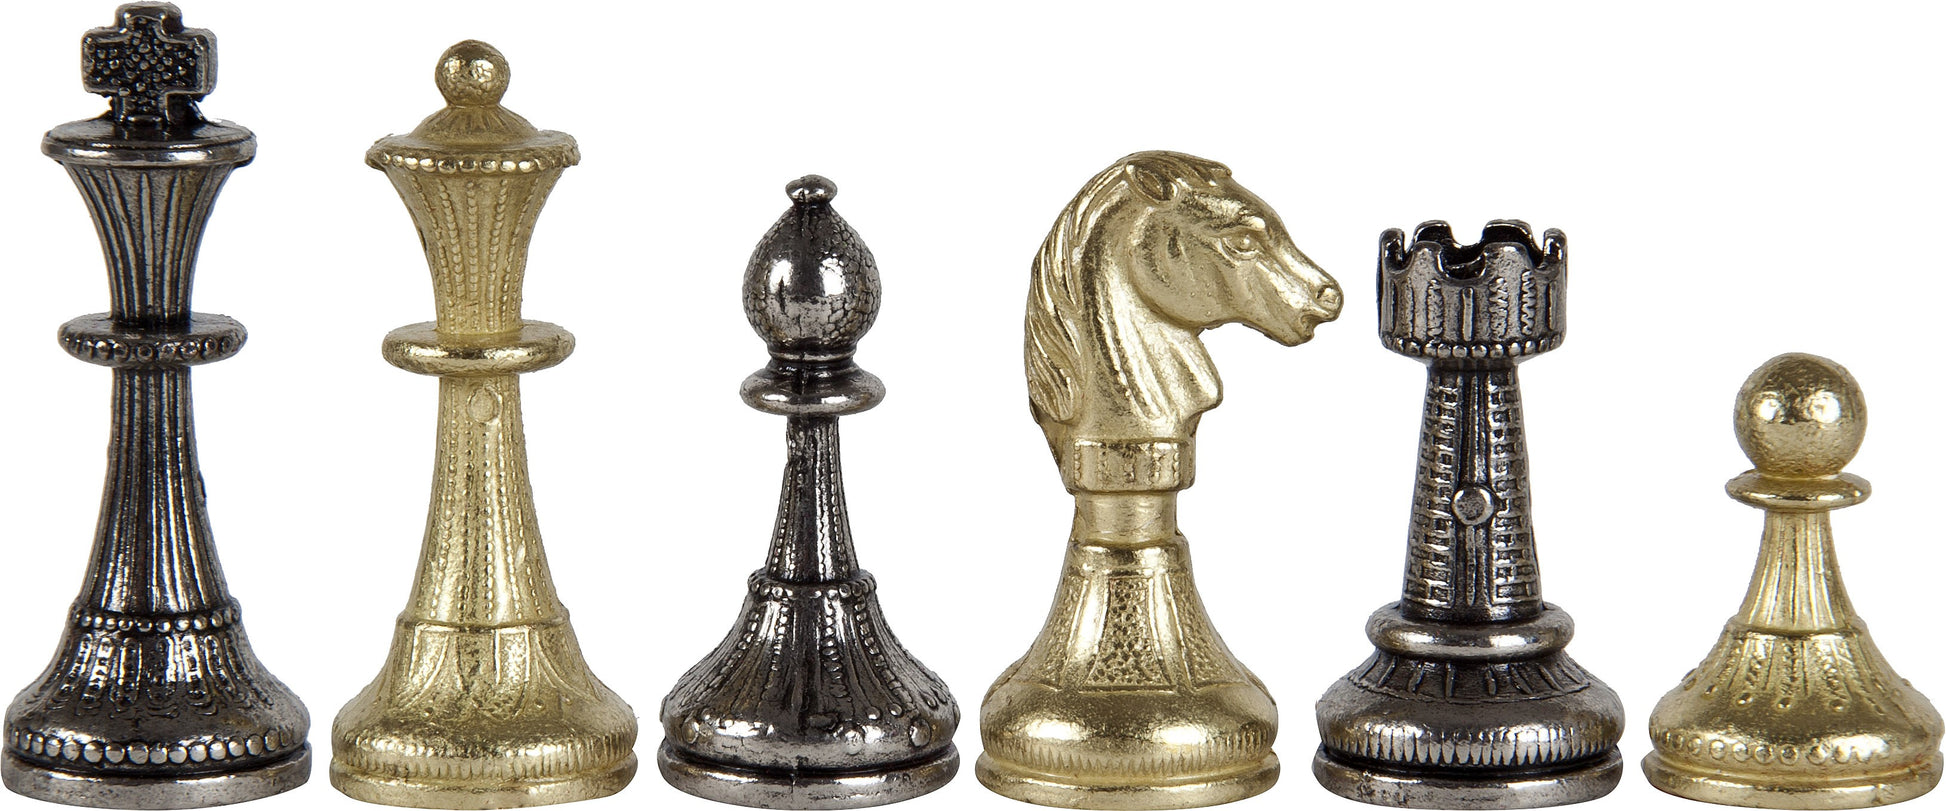 Silver plated Brass Florentine Staunton Chessmen